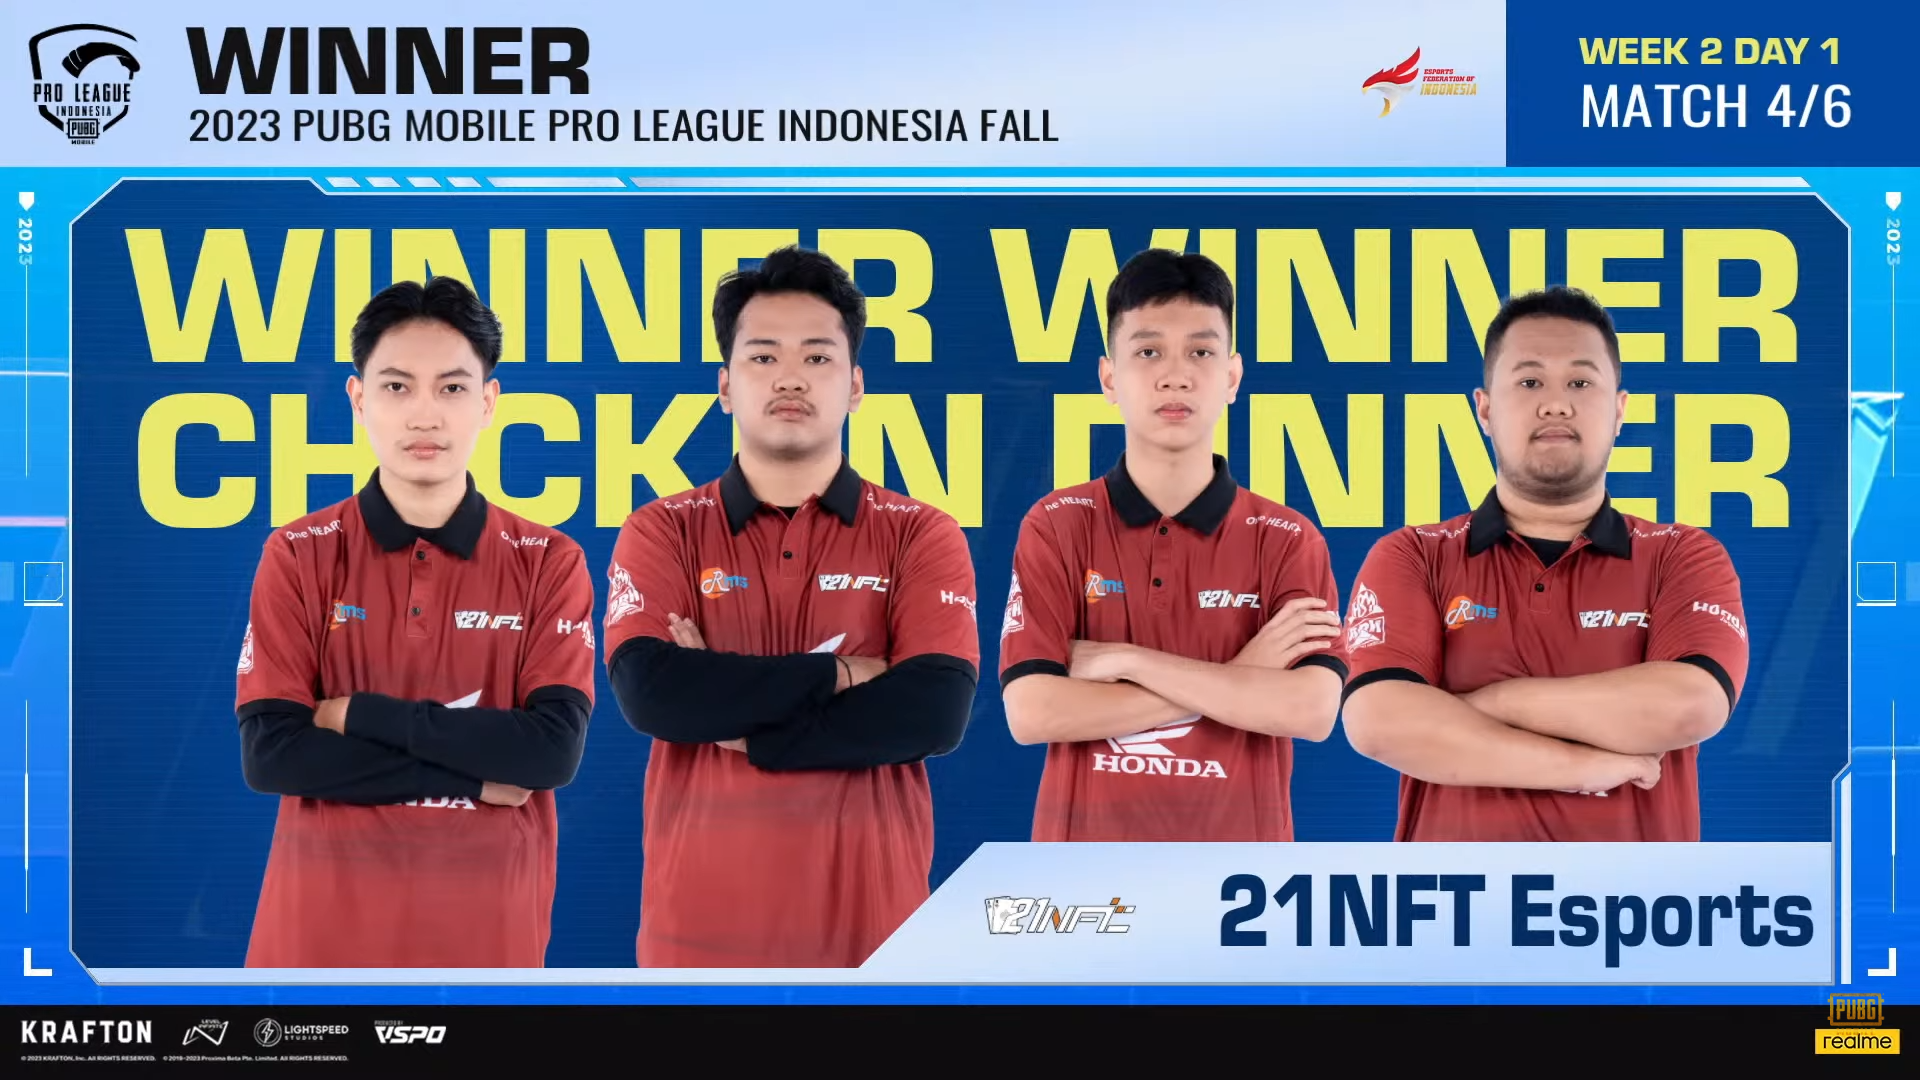 21 NFT Esports Mengamuk! Ini Hasil Hari Pertama di Minggu Kedua PMPL Indonesia Fall 2023